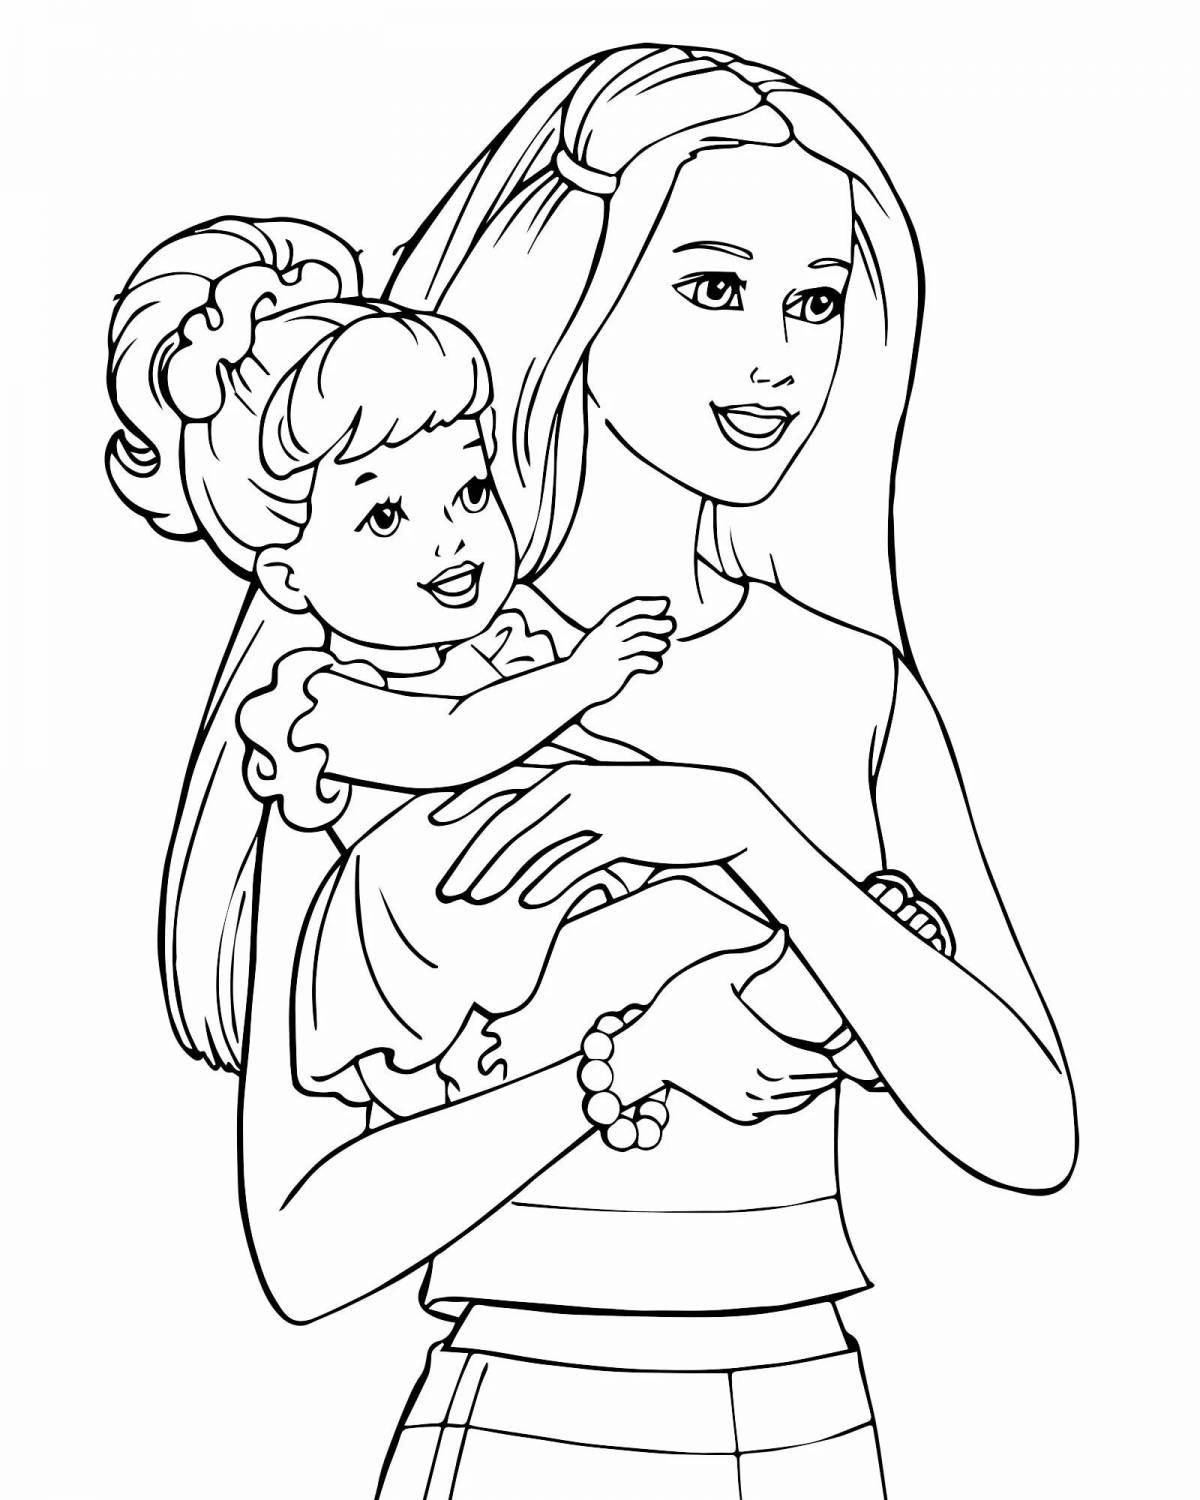 Fun coloring barbie and daughter